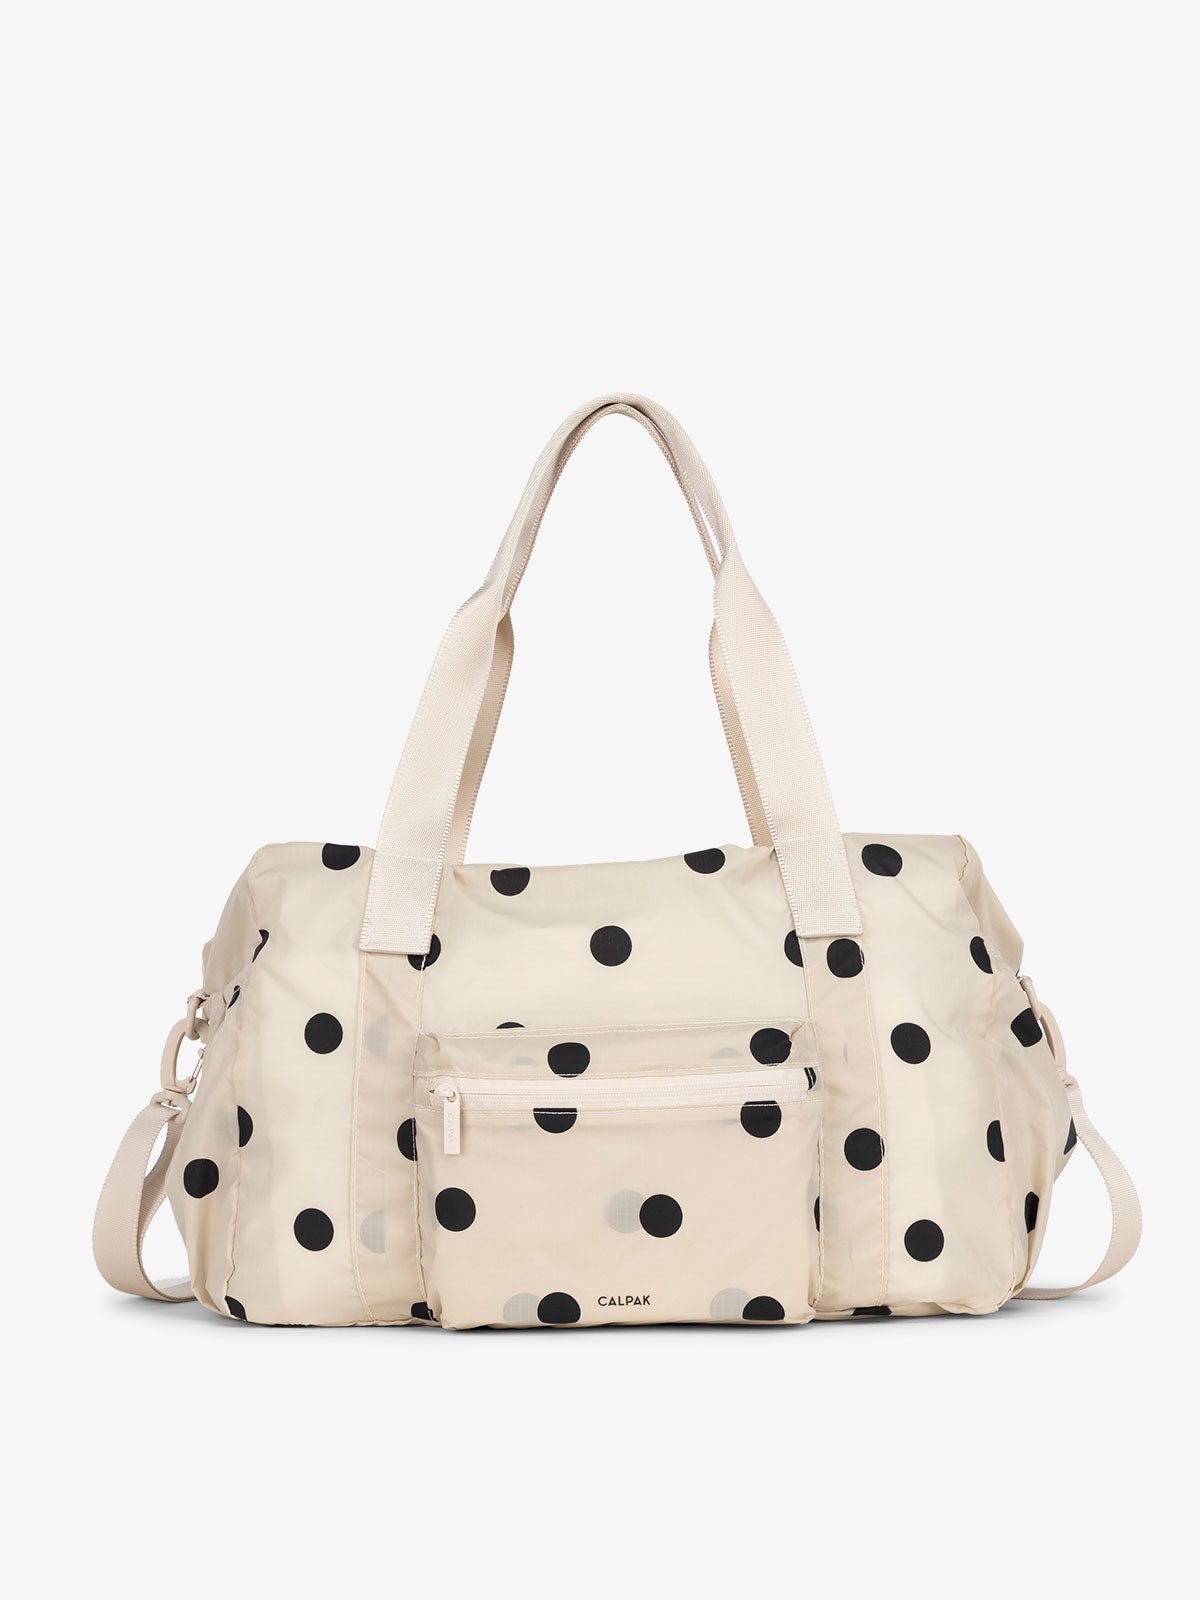 CALPAK lightweight duffle bag in polka dot for everyday